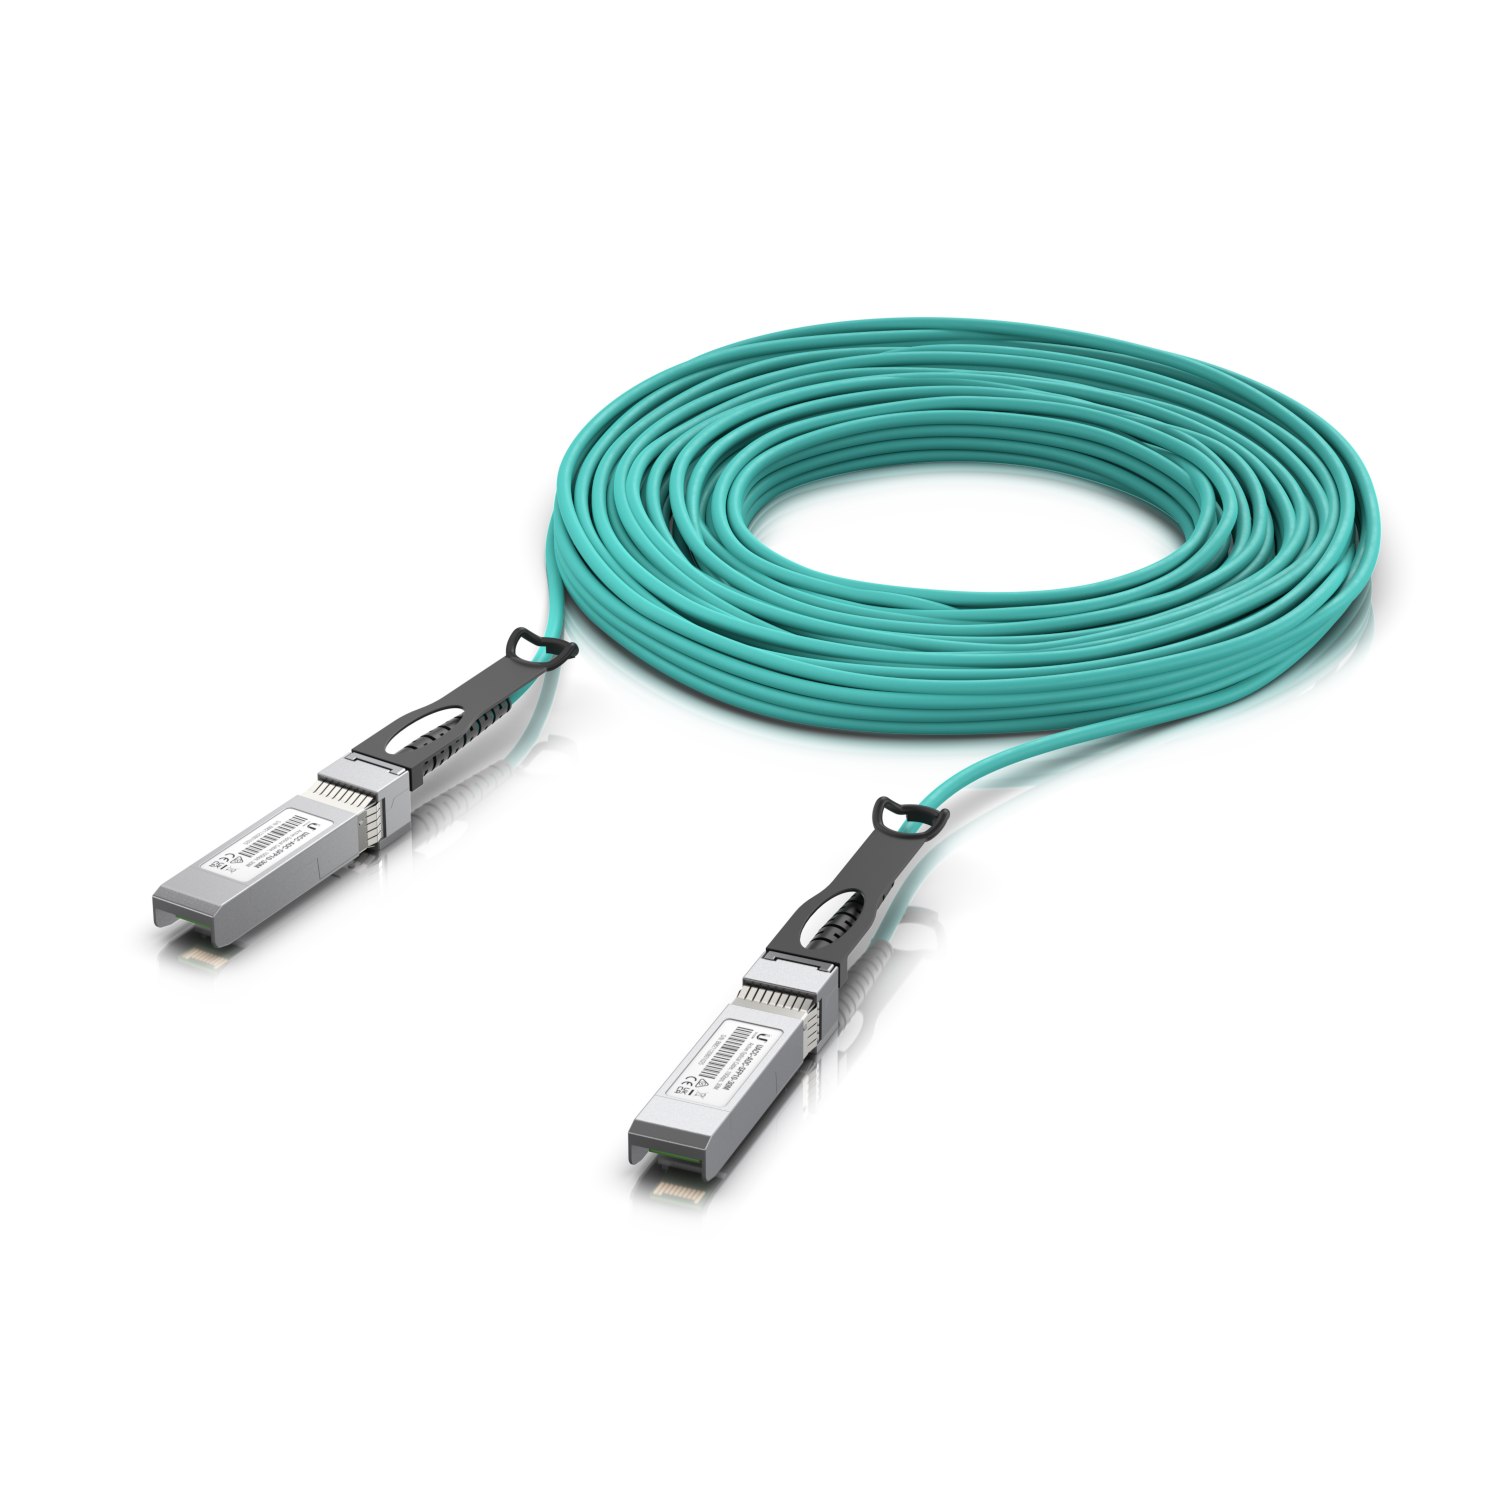 UniFi LR Direct Attach Cable, 30m